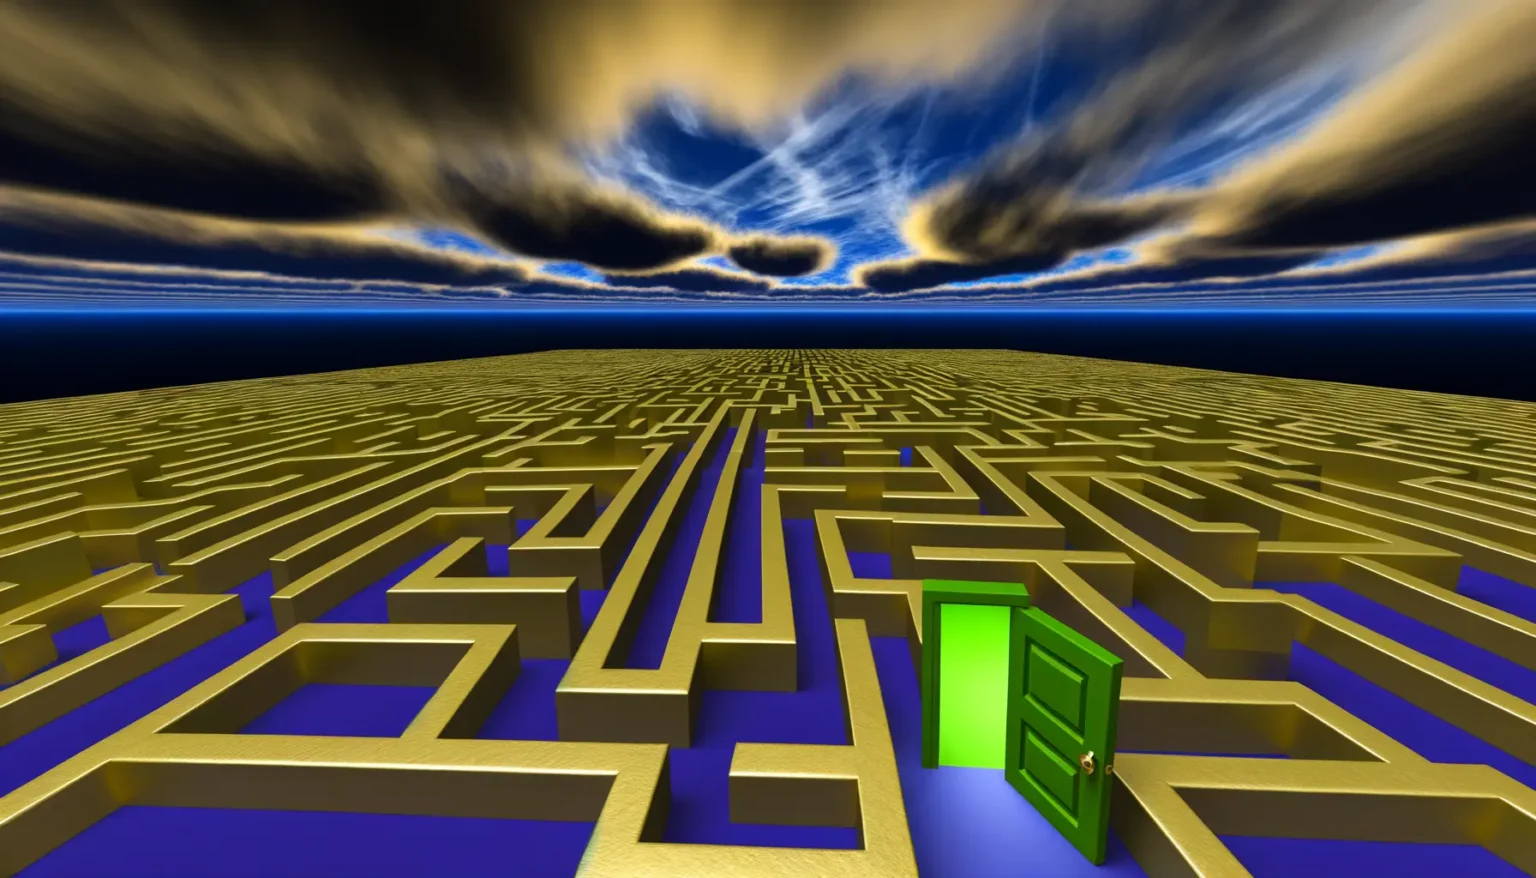 Digitales Konzeptbild eines großen goldenen Labyrinths mit einer leuchtend grünen Tür, die offen steht. Der Himmel im Hintergrund zeigt dramatische Wolkenformationen in Blau und Gold, die über dem ruhigen blauen Meer schweben.